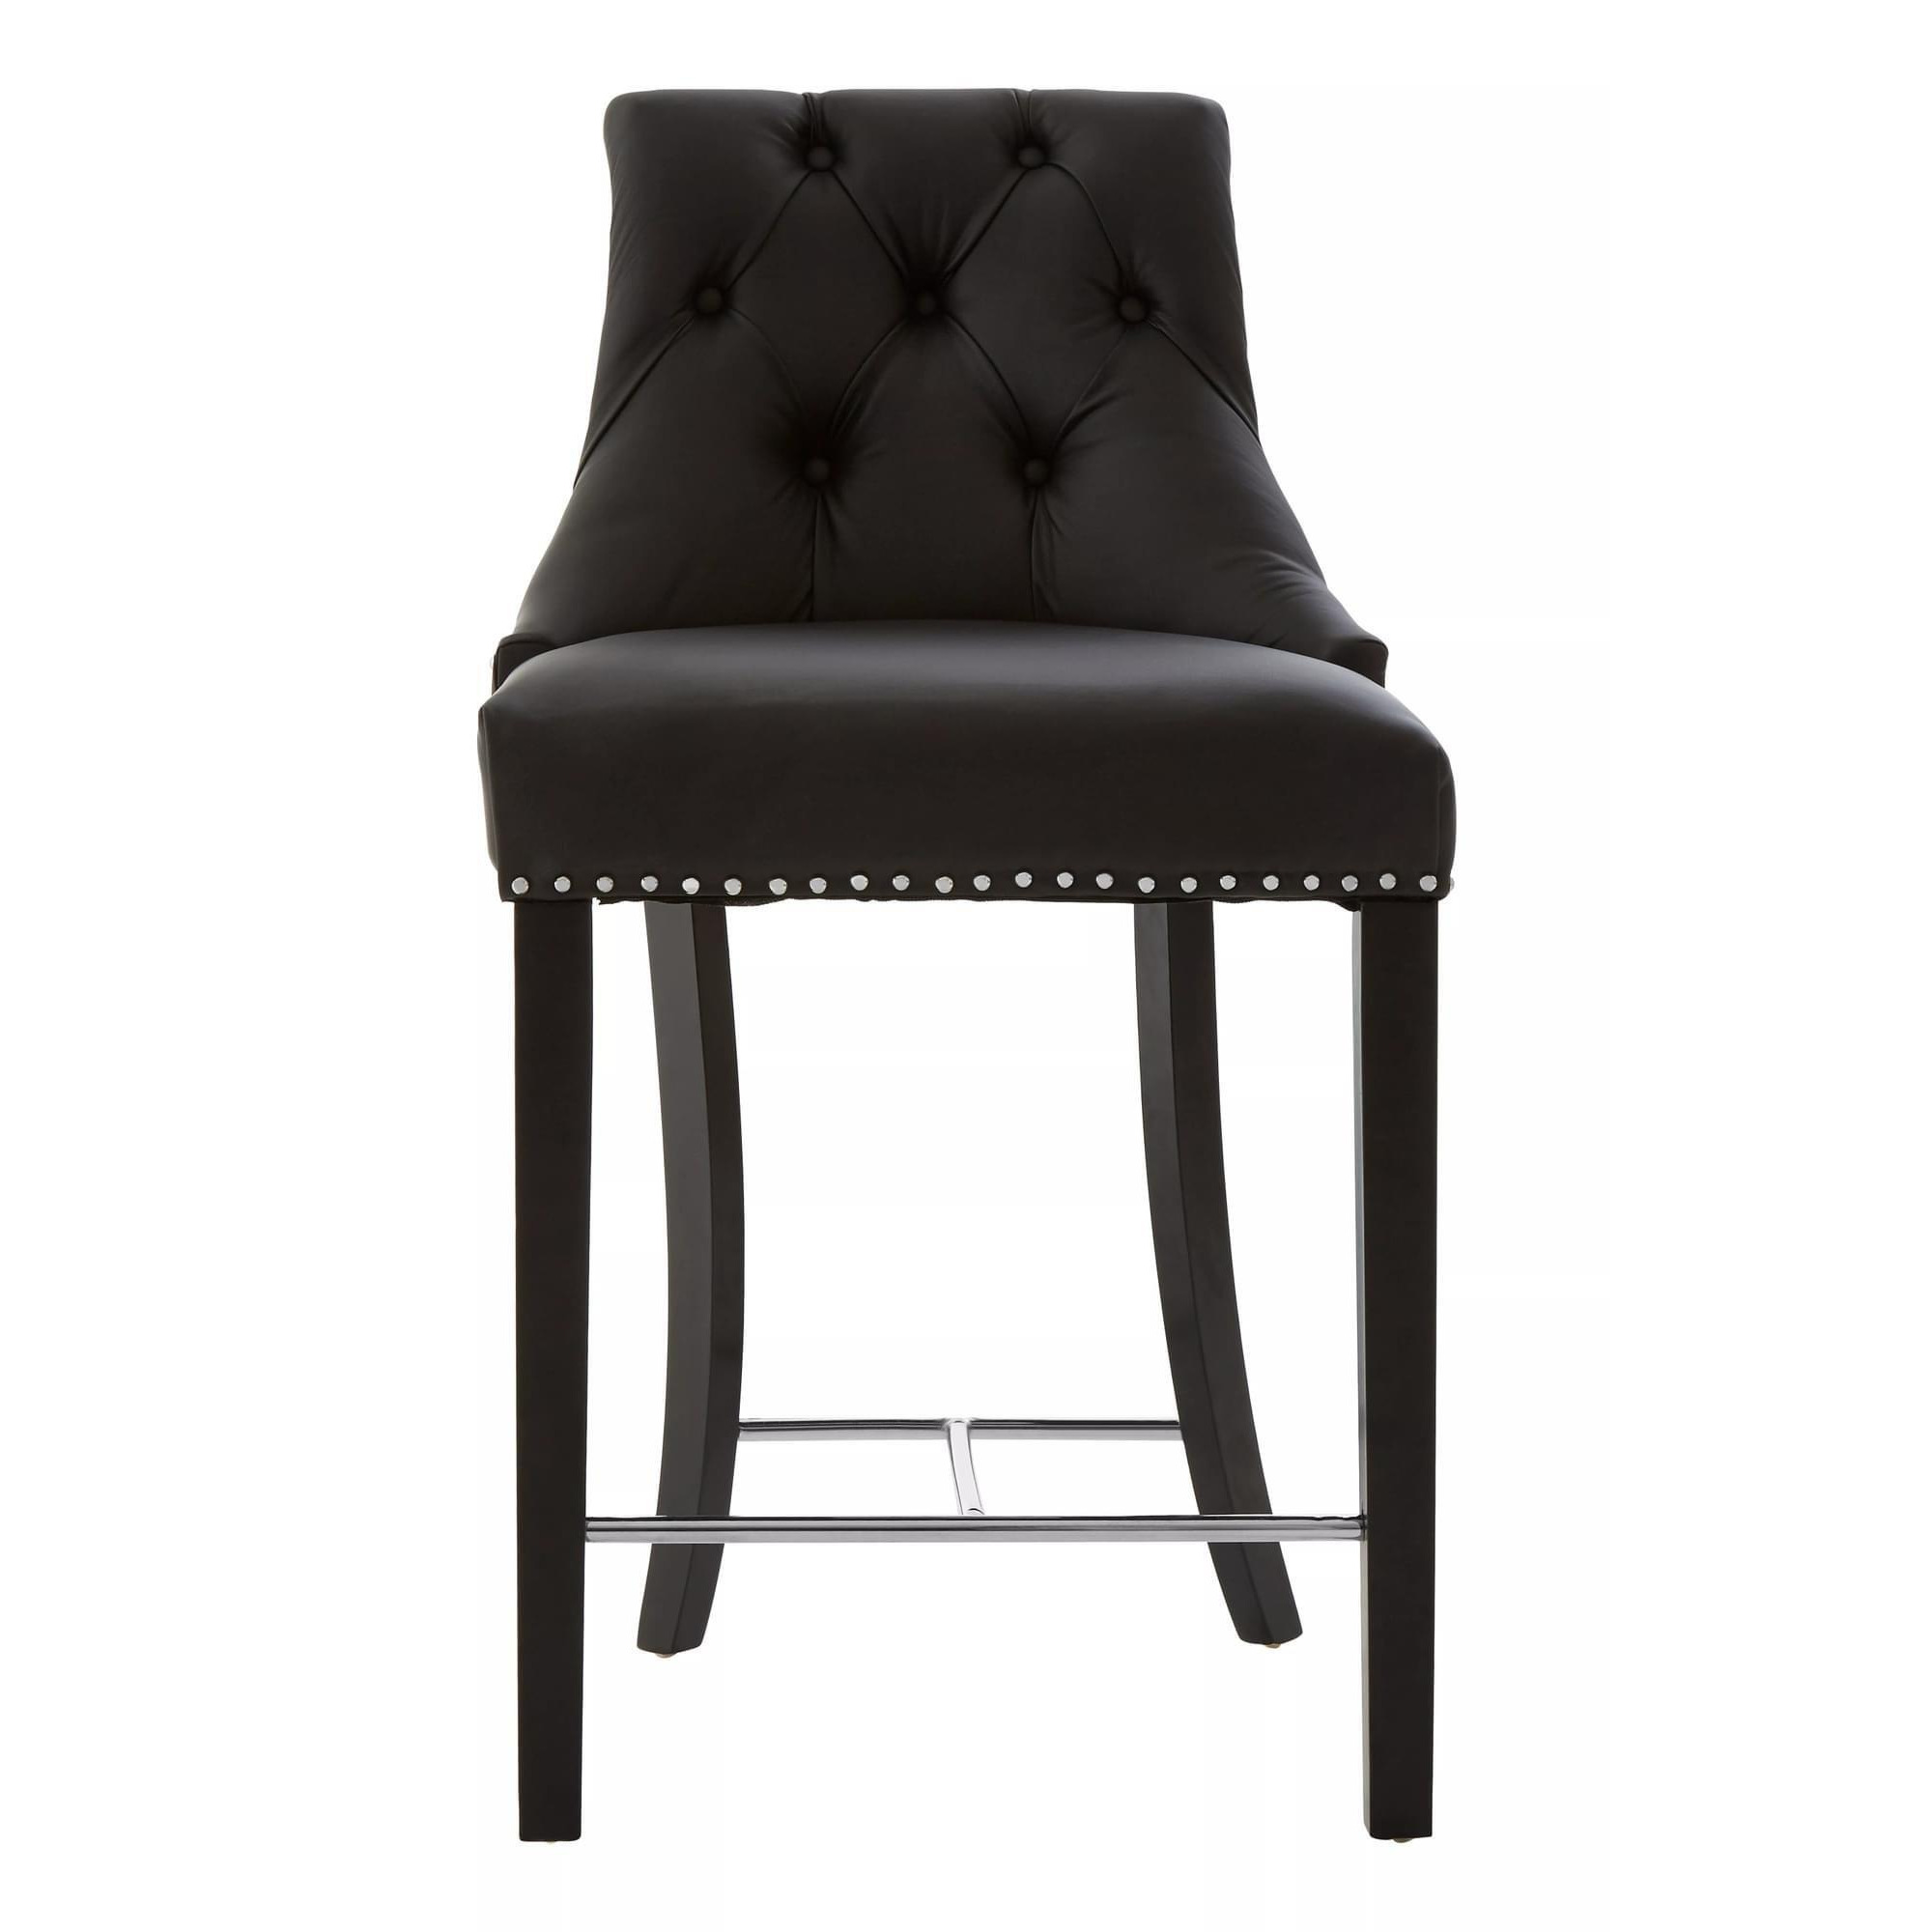 Interiors by Premier Regents Park Faux Leather Bar Chair - image 1